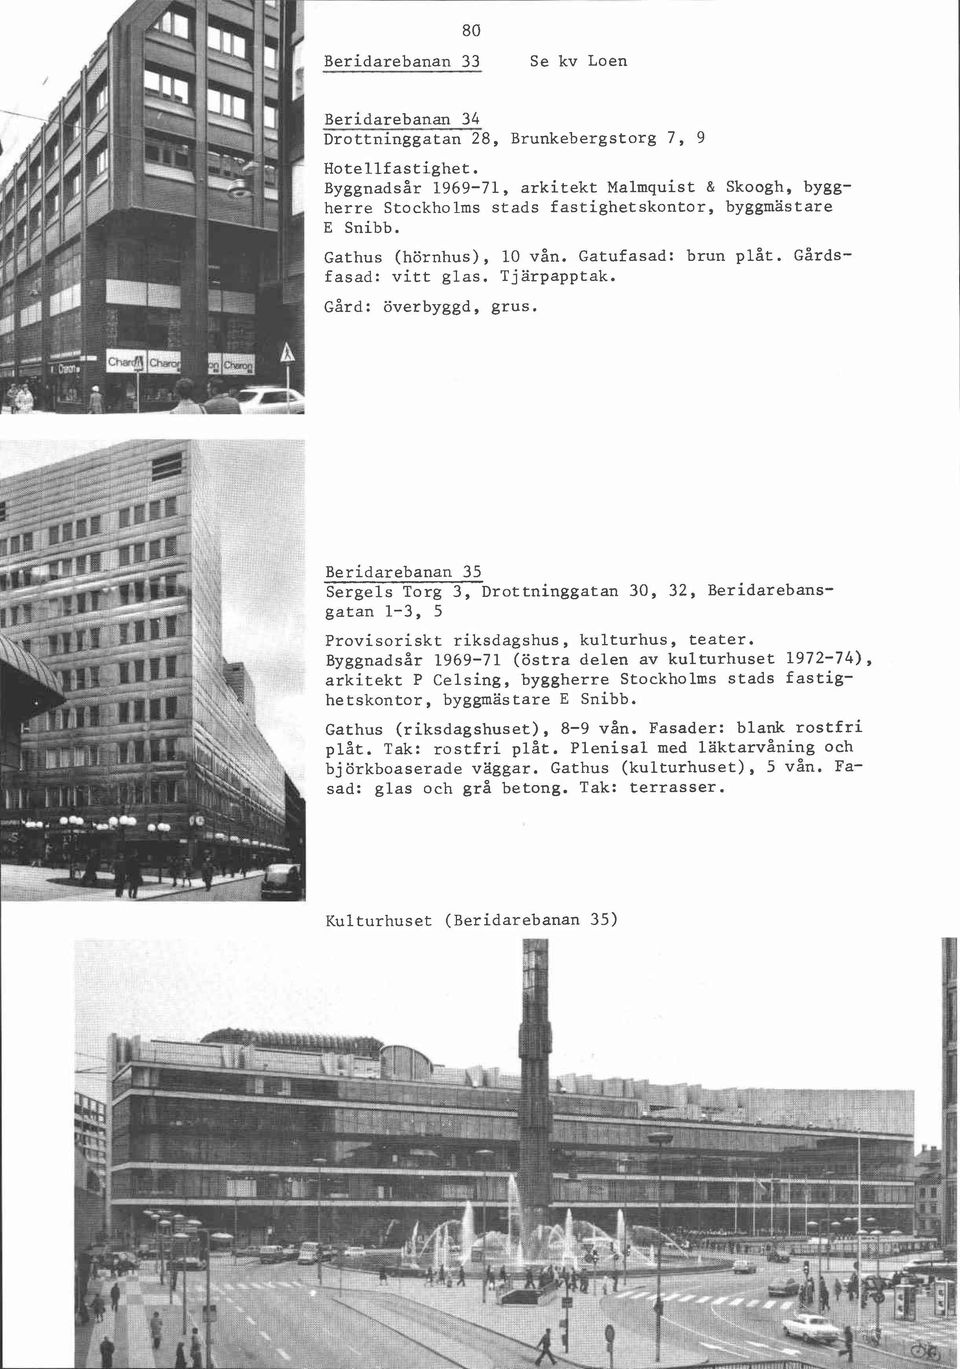 Byggnadsår 1969-71, arkitekt Malmquist & Skoogh, byggherre Stockholms stads